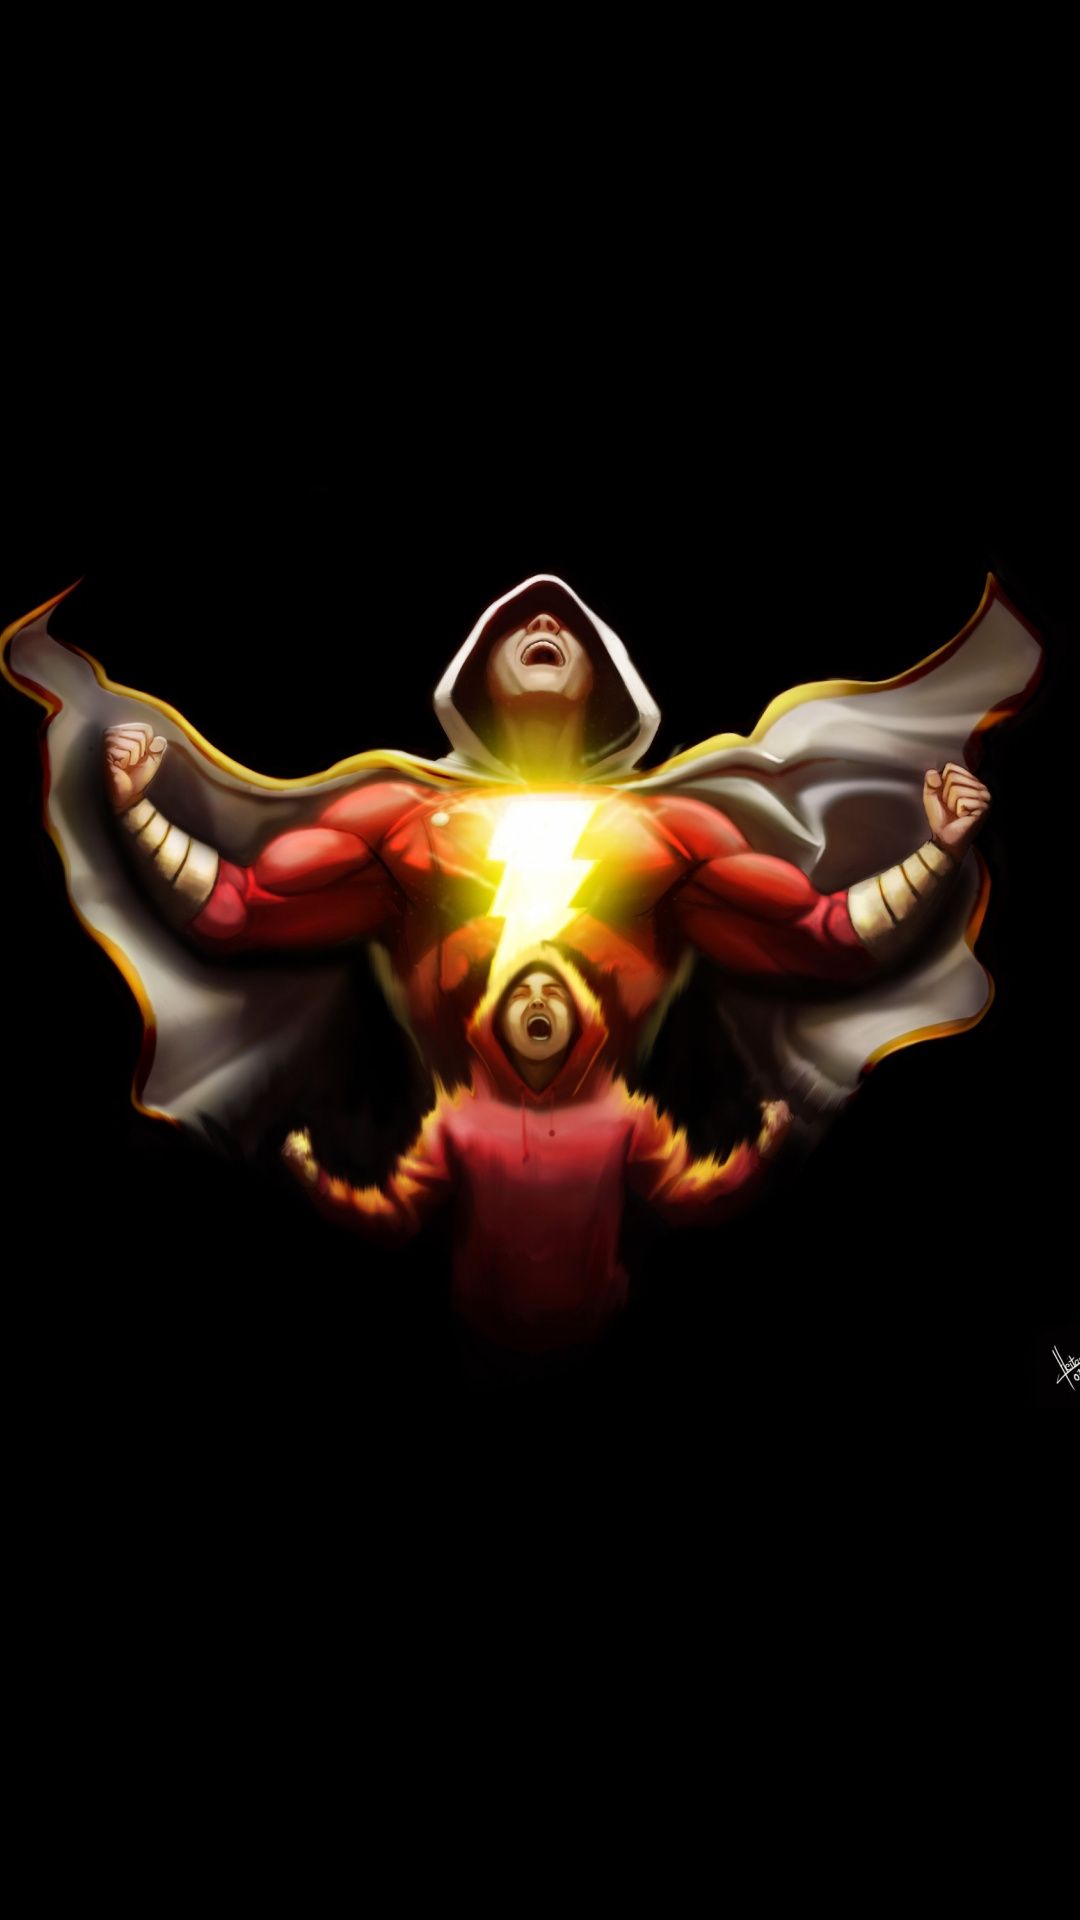 Shazam transform dc comics superhero art 1080x1920 wallpaper 1080x1920